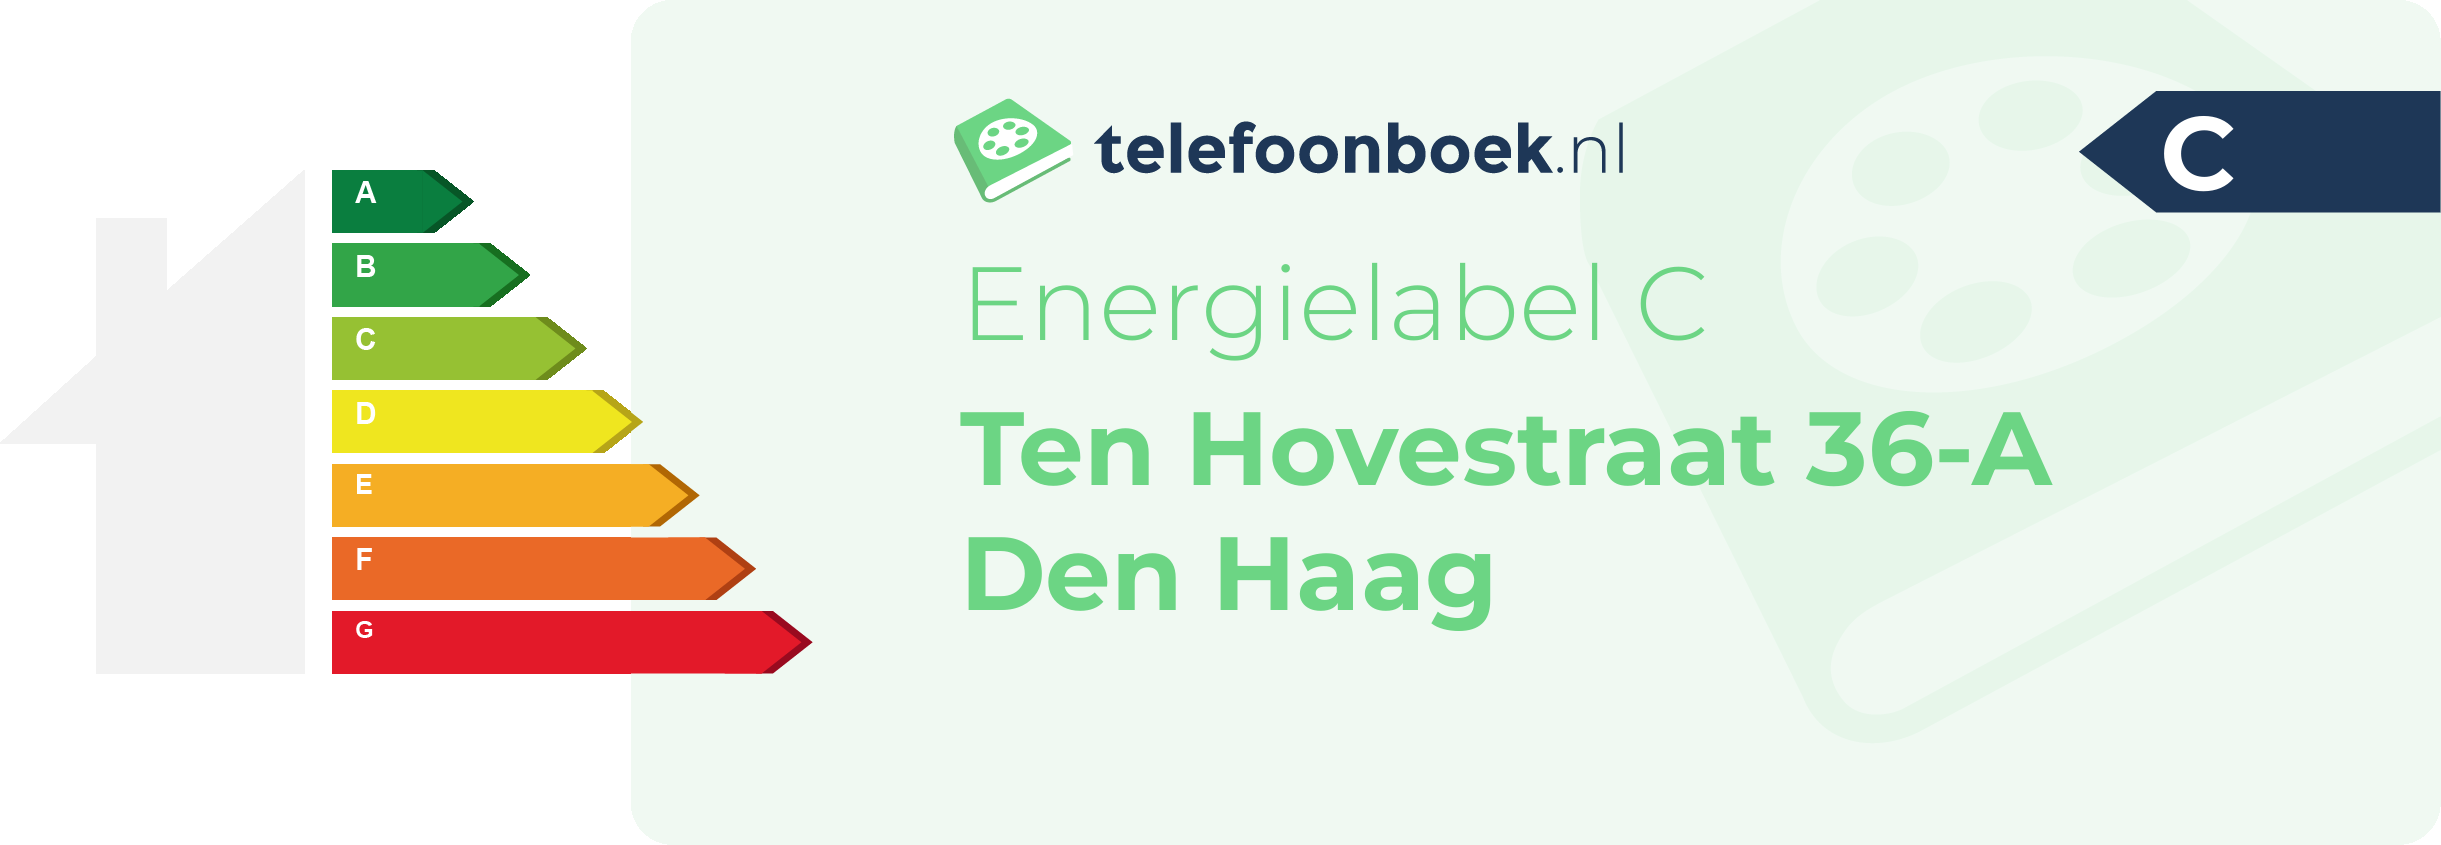 Energielabel Ten Hovestraat 36-A Den Haag